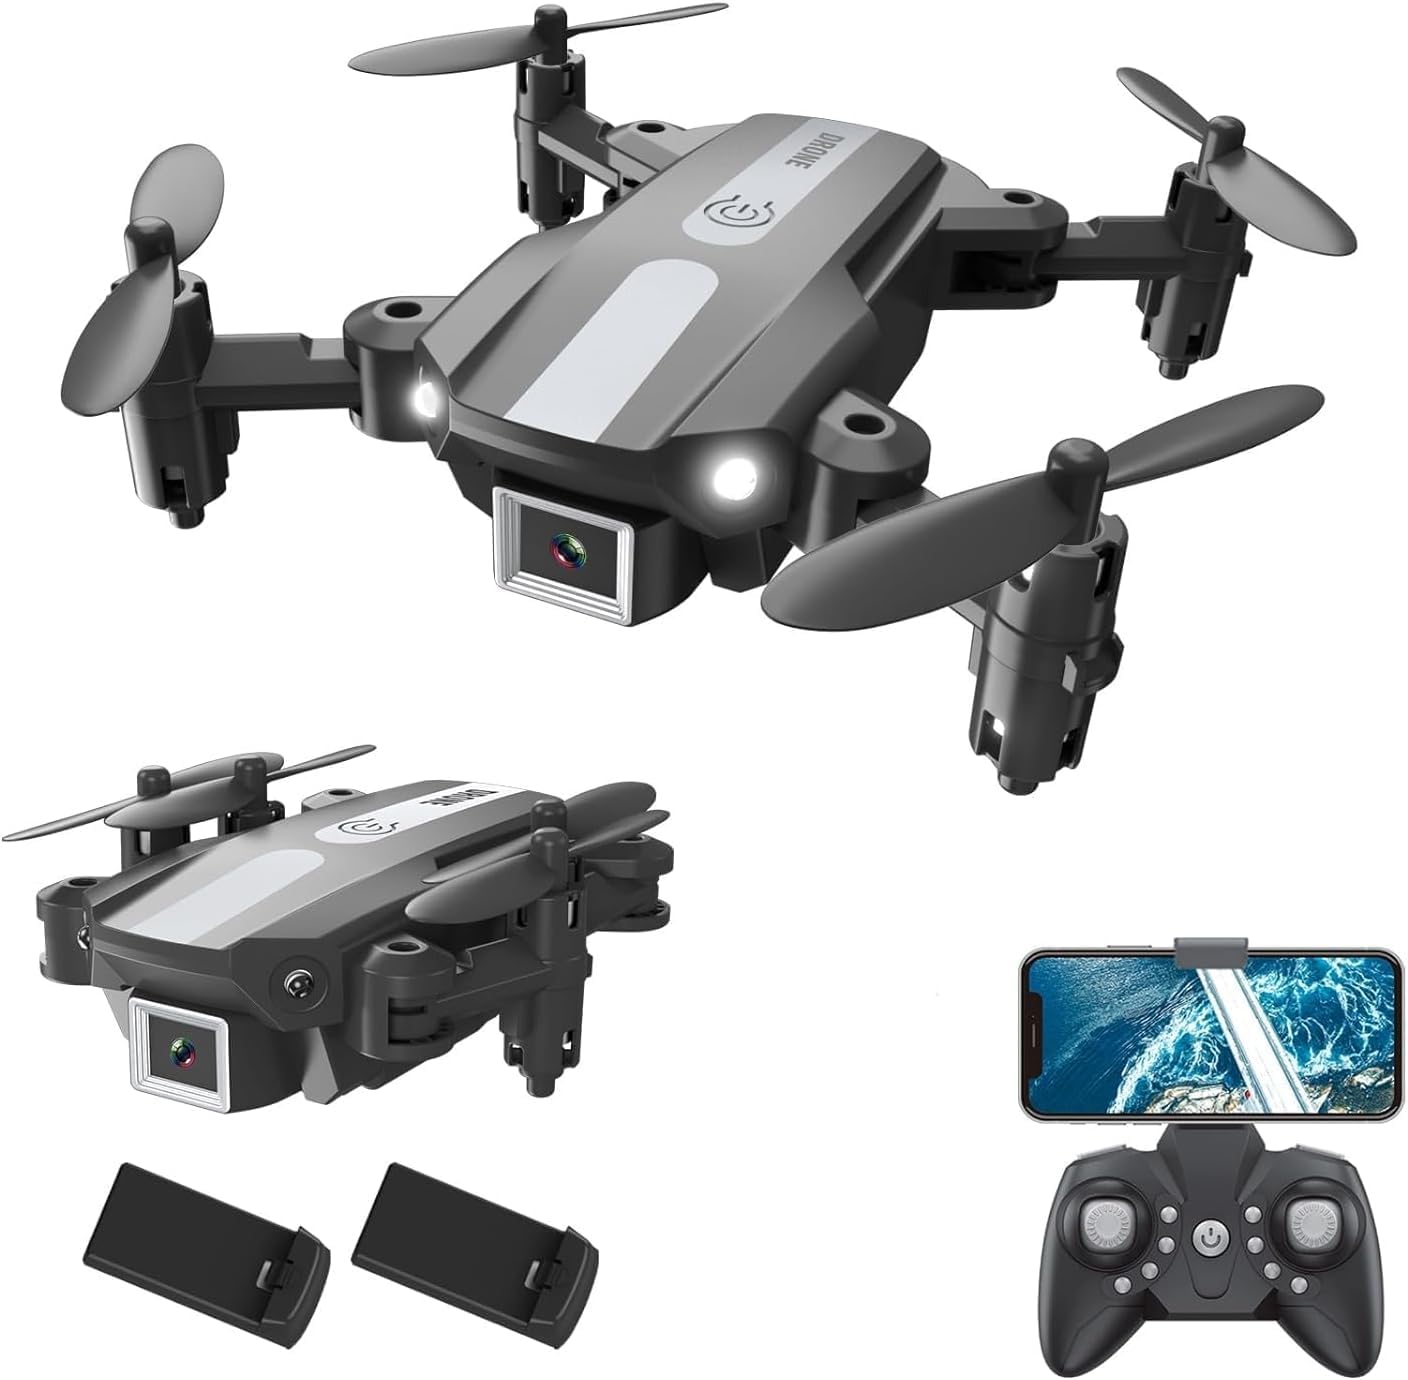 Wipkviey Drohne mit Kamera 1080P, T25 Mini RC Quadrocopter mit FPV WiFi Übertragung, Faltbar FPV Drohnen, Headless-Modus, Schwerkraft kontrolle, Gestensteuerung für Anfänger, mit 2 Batterien von Wipkviey